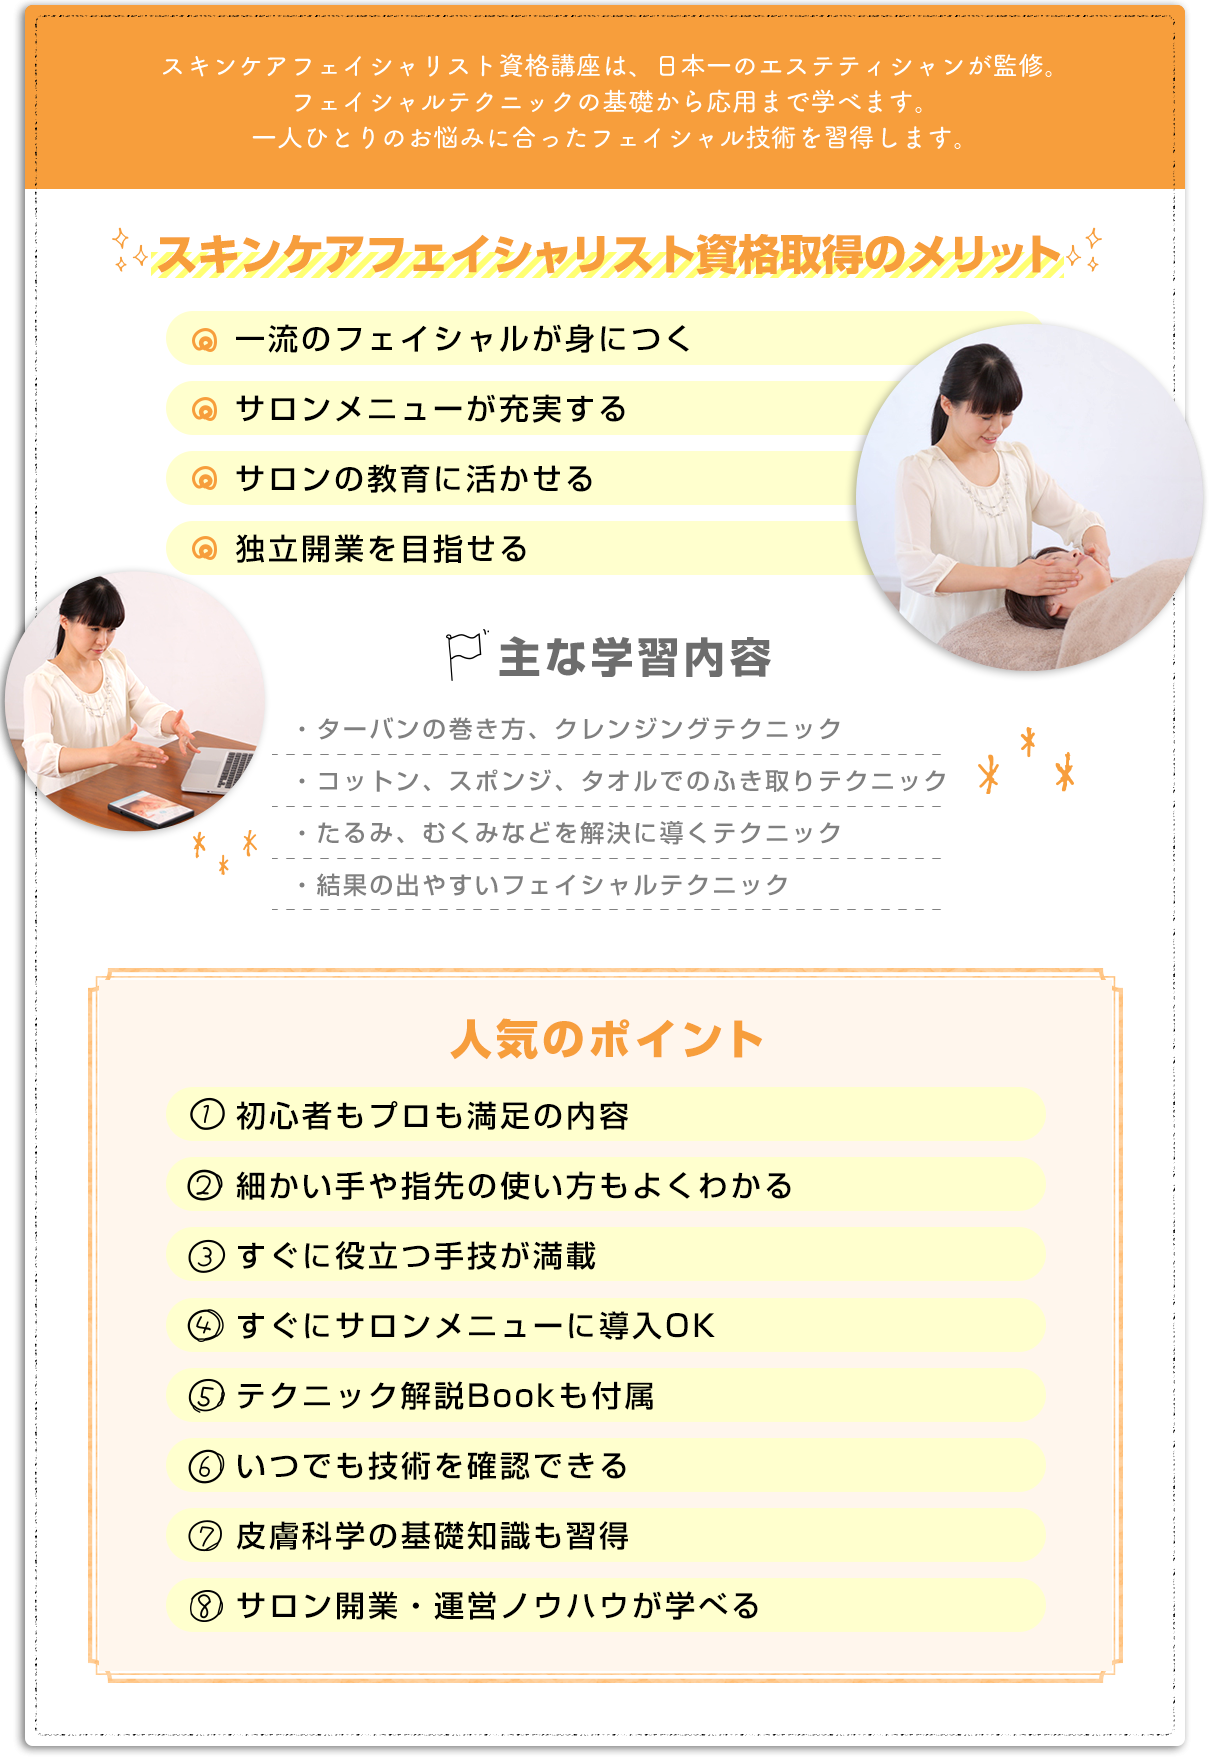 スキンケアフェイシャリスト資格講座は、日本一のエステティシャンが監修。フェイシャルテクニックの基礎から応用まで学べます。